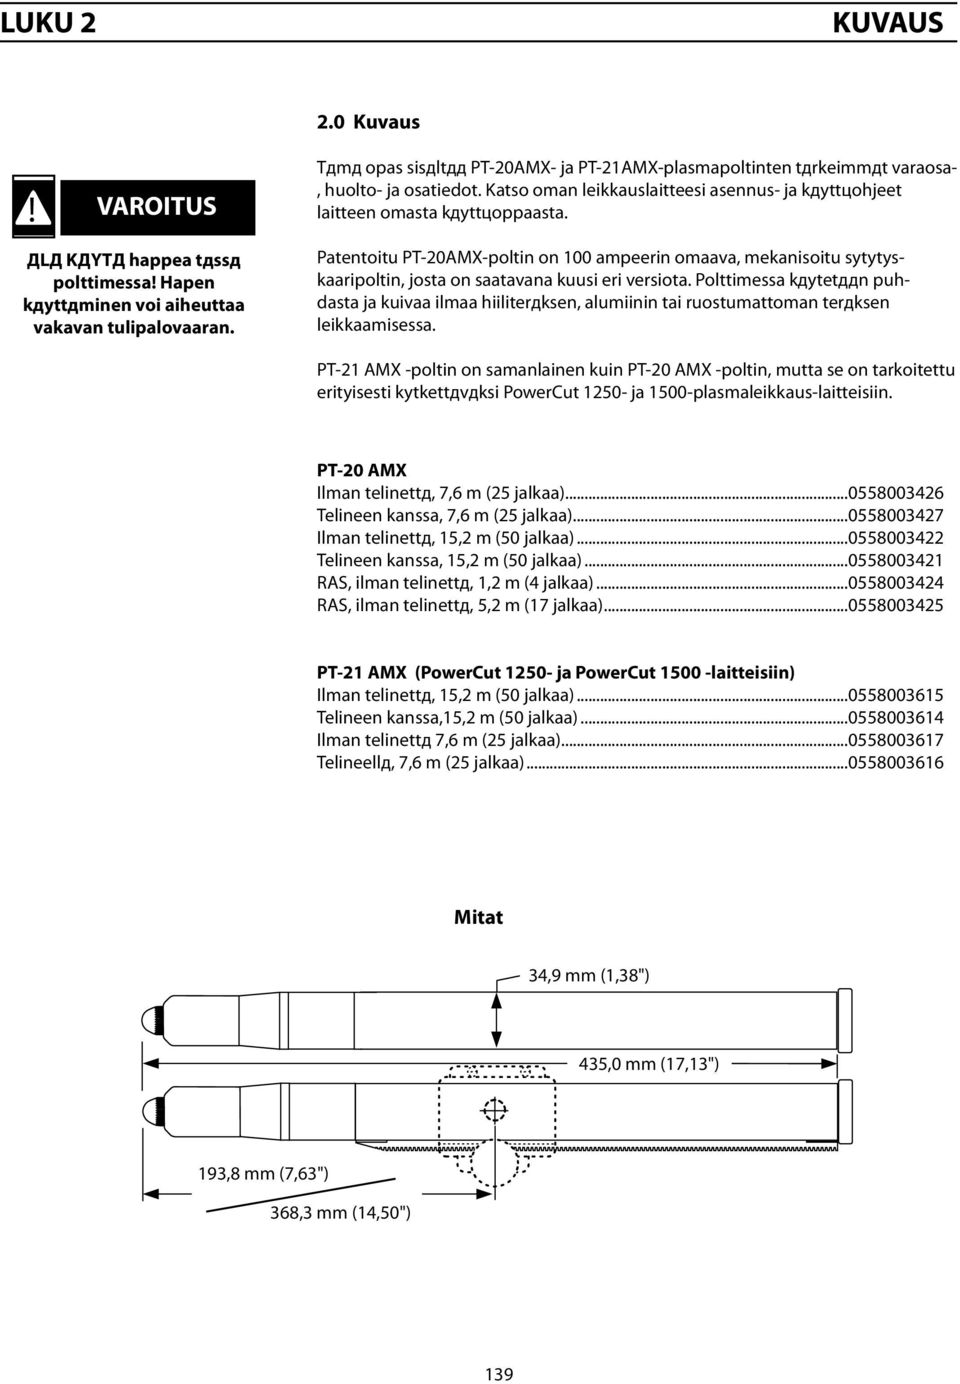 Patentoitu PT-20AMX-poltin on 100 ampeerin omaava, mekanisoitu sytytyskaaripoltin, josta on saatavana kuusi eri versiota.